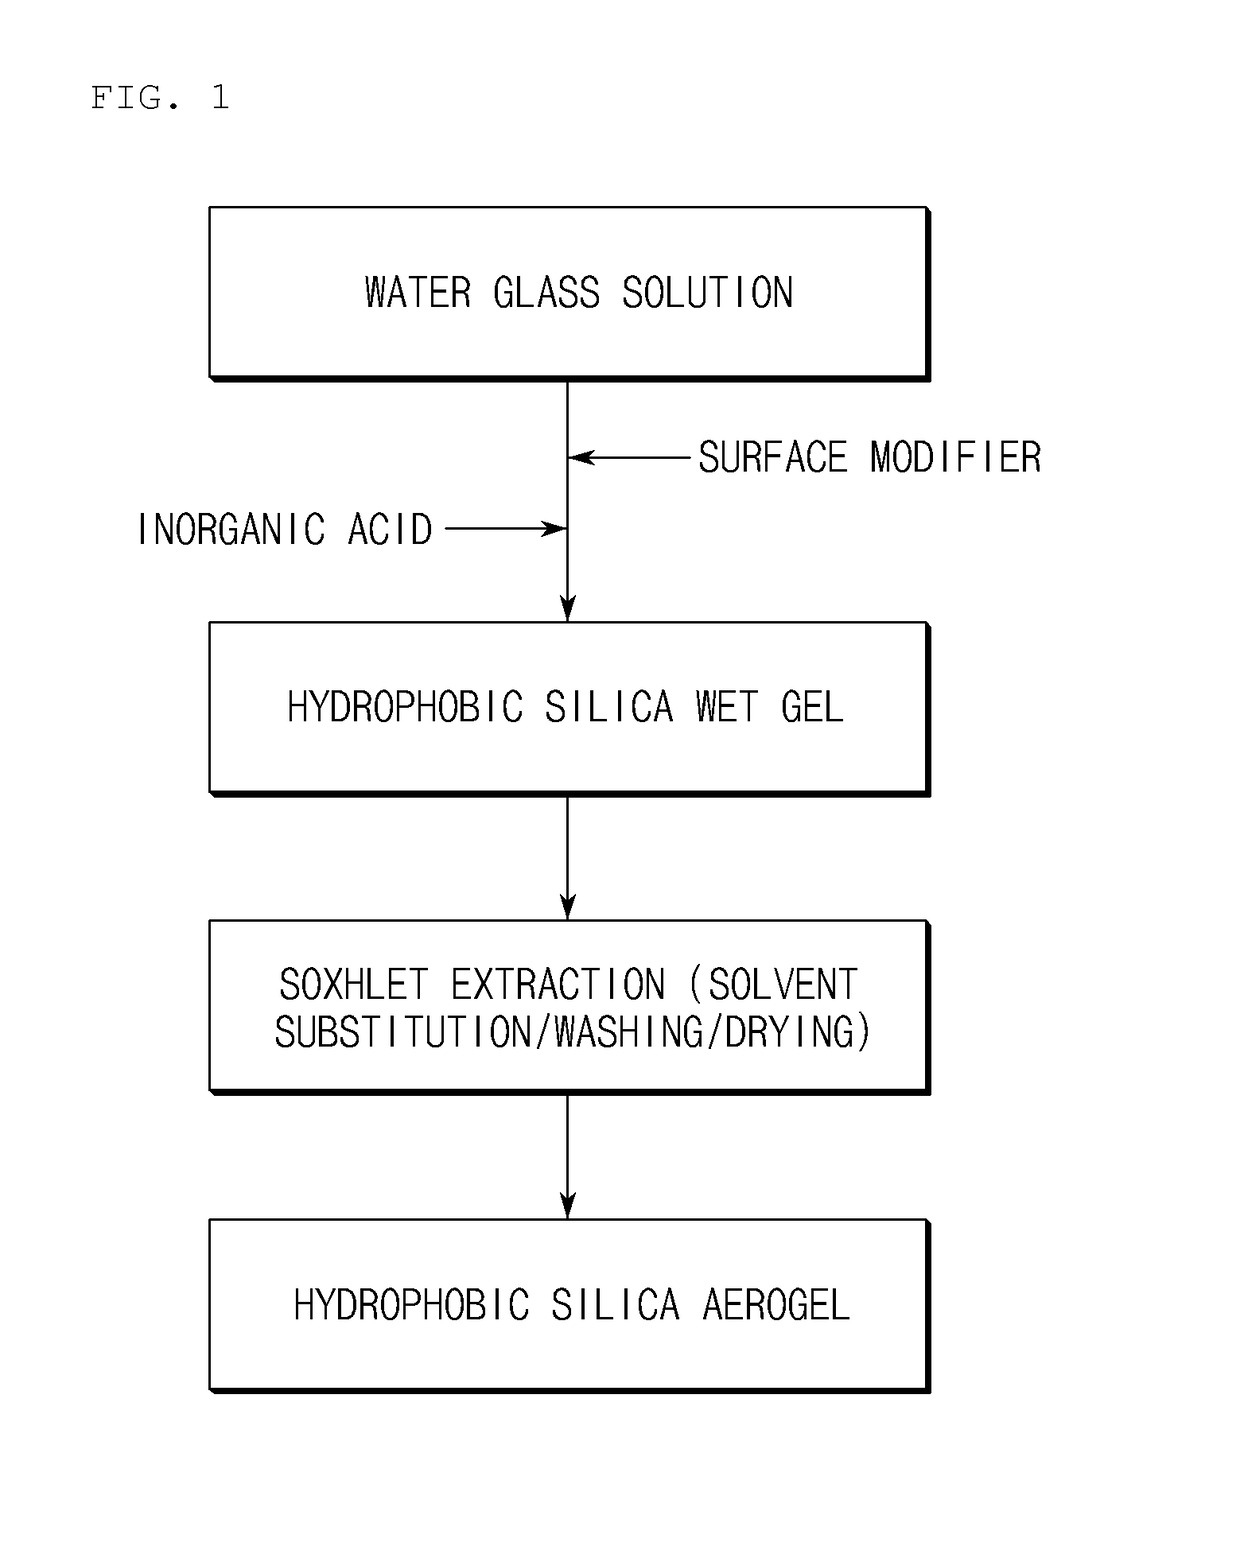 Preparation method of hydrophobic silica aerogel